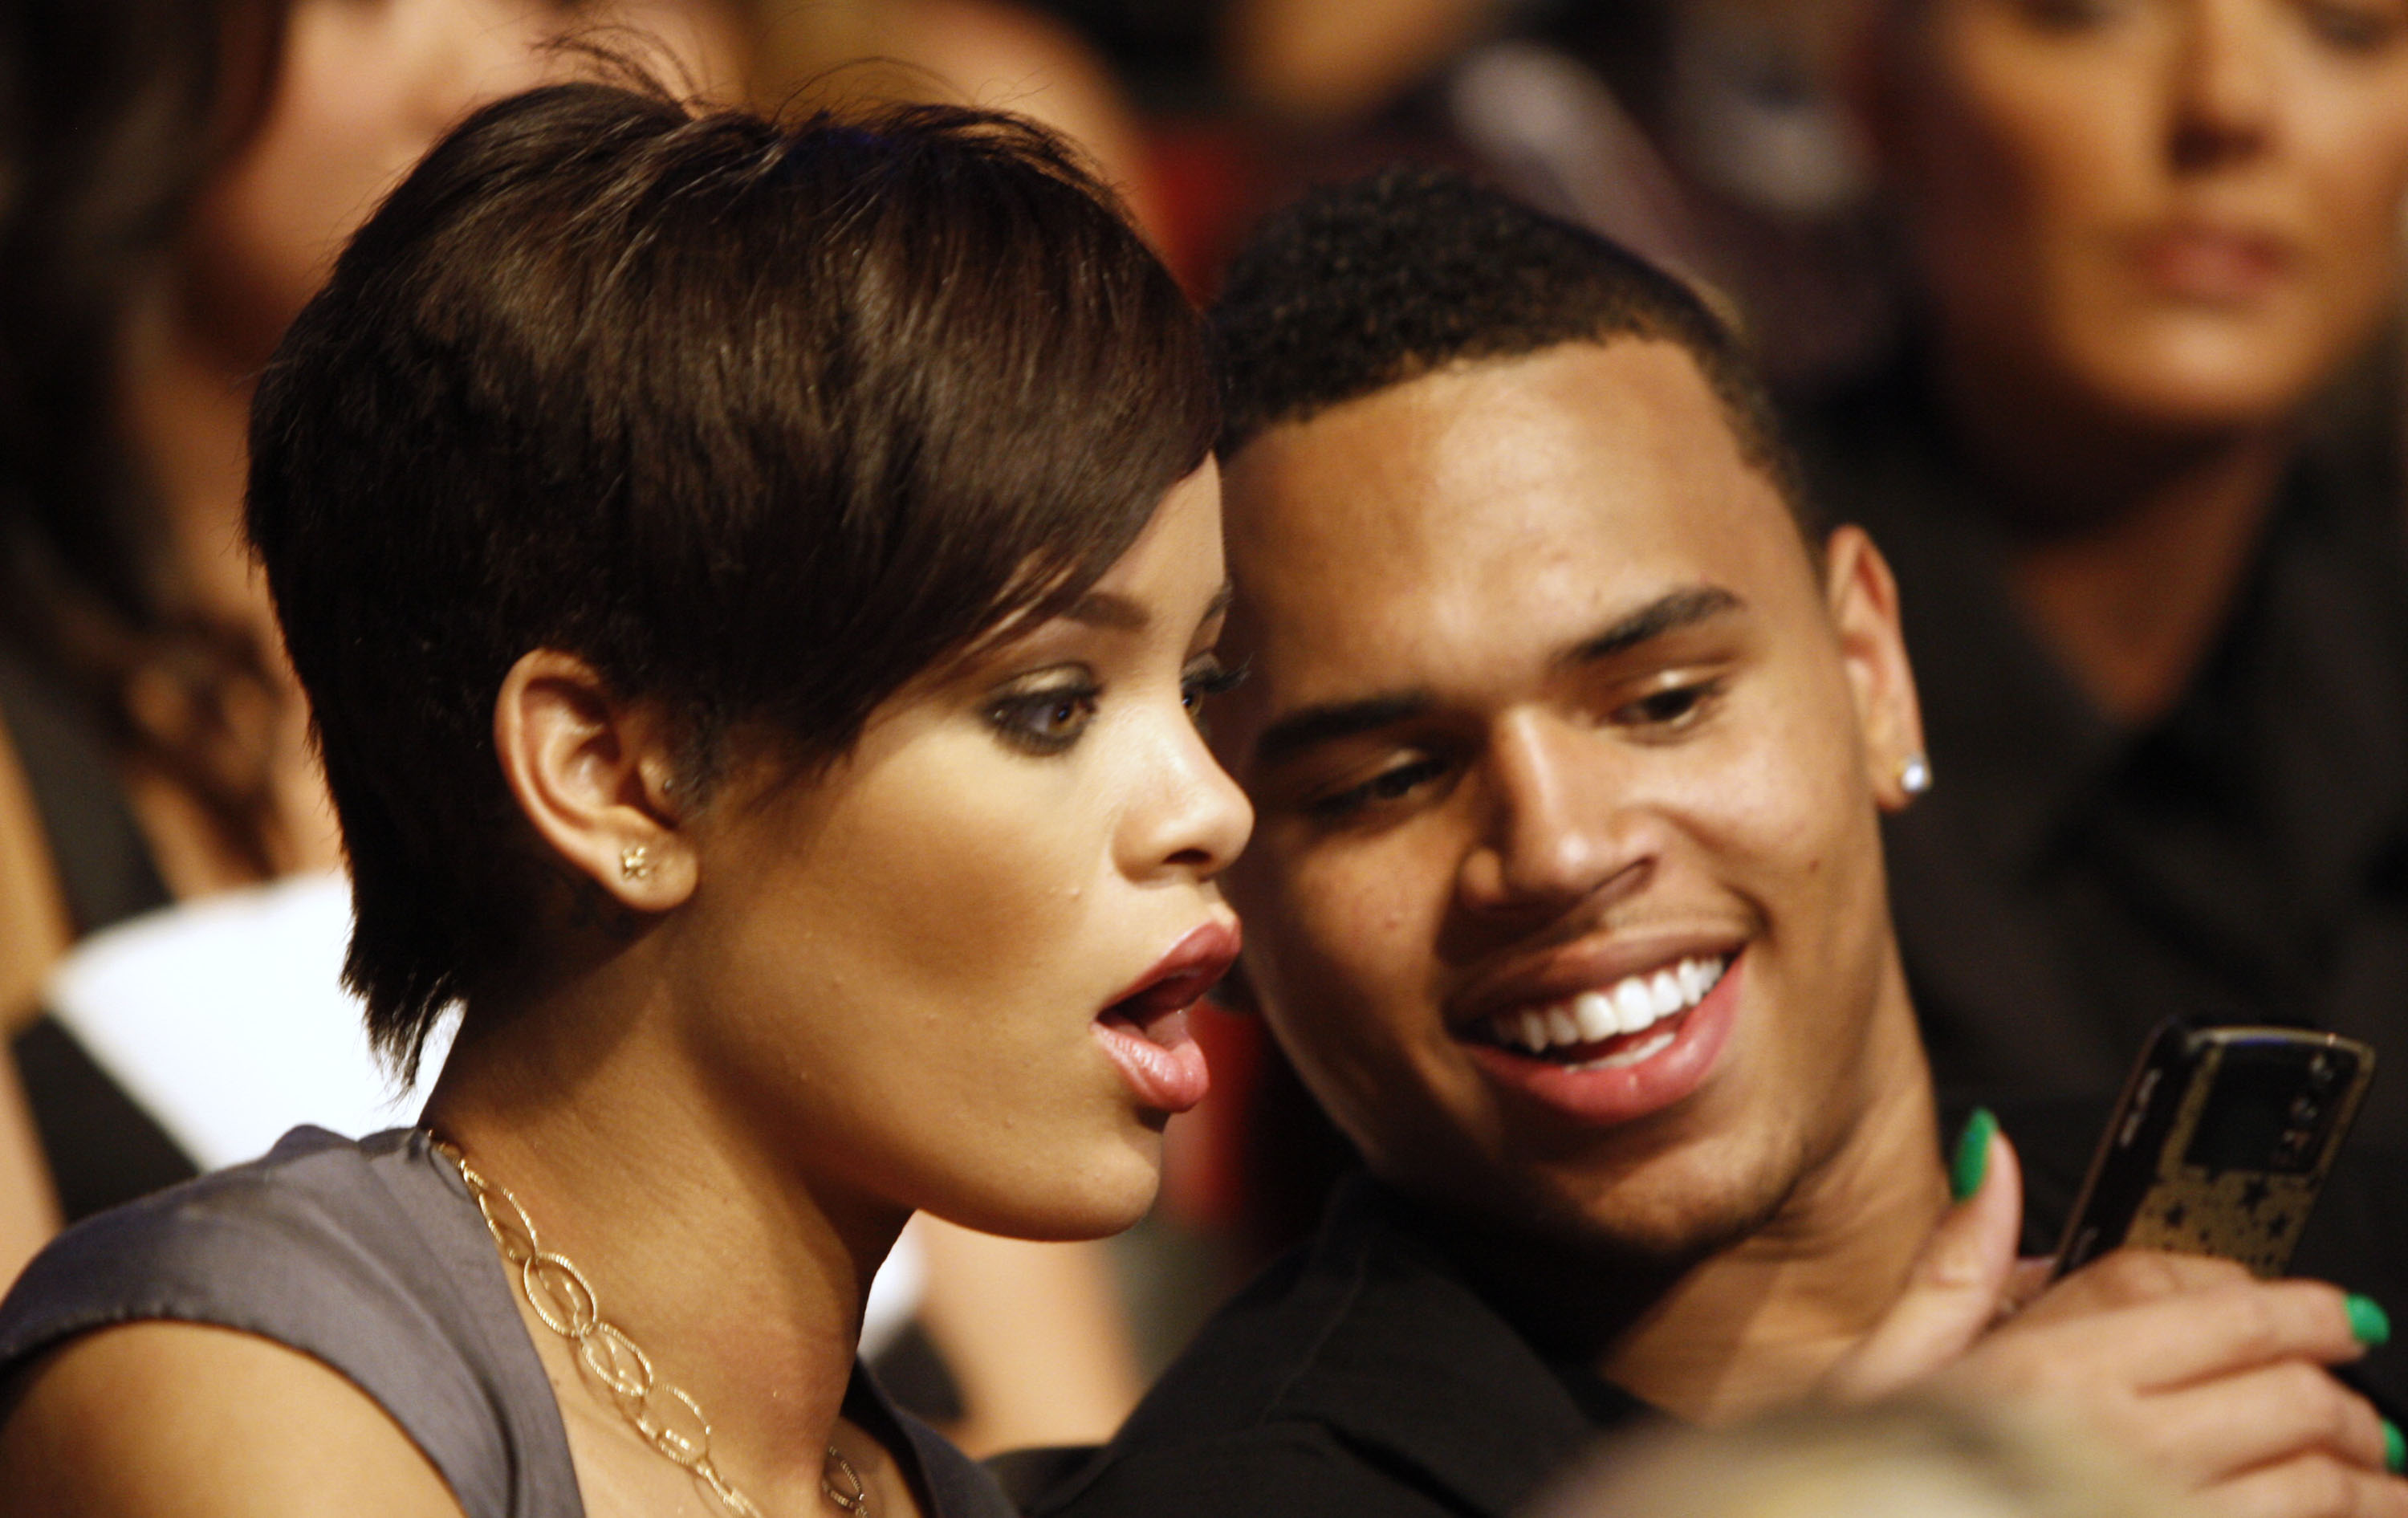 2008 med dåvarande pojkvännen Chris Brown som misshandlade artisten svårt efter en kväll ute. Rihanna tog efter det tydligt avstånd från mannen hon var kär i - samtidigt som bilder på hennes sargade ansikte spreds på nätet. Flera radiostationer bojkottade